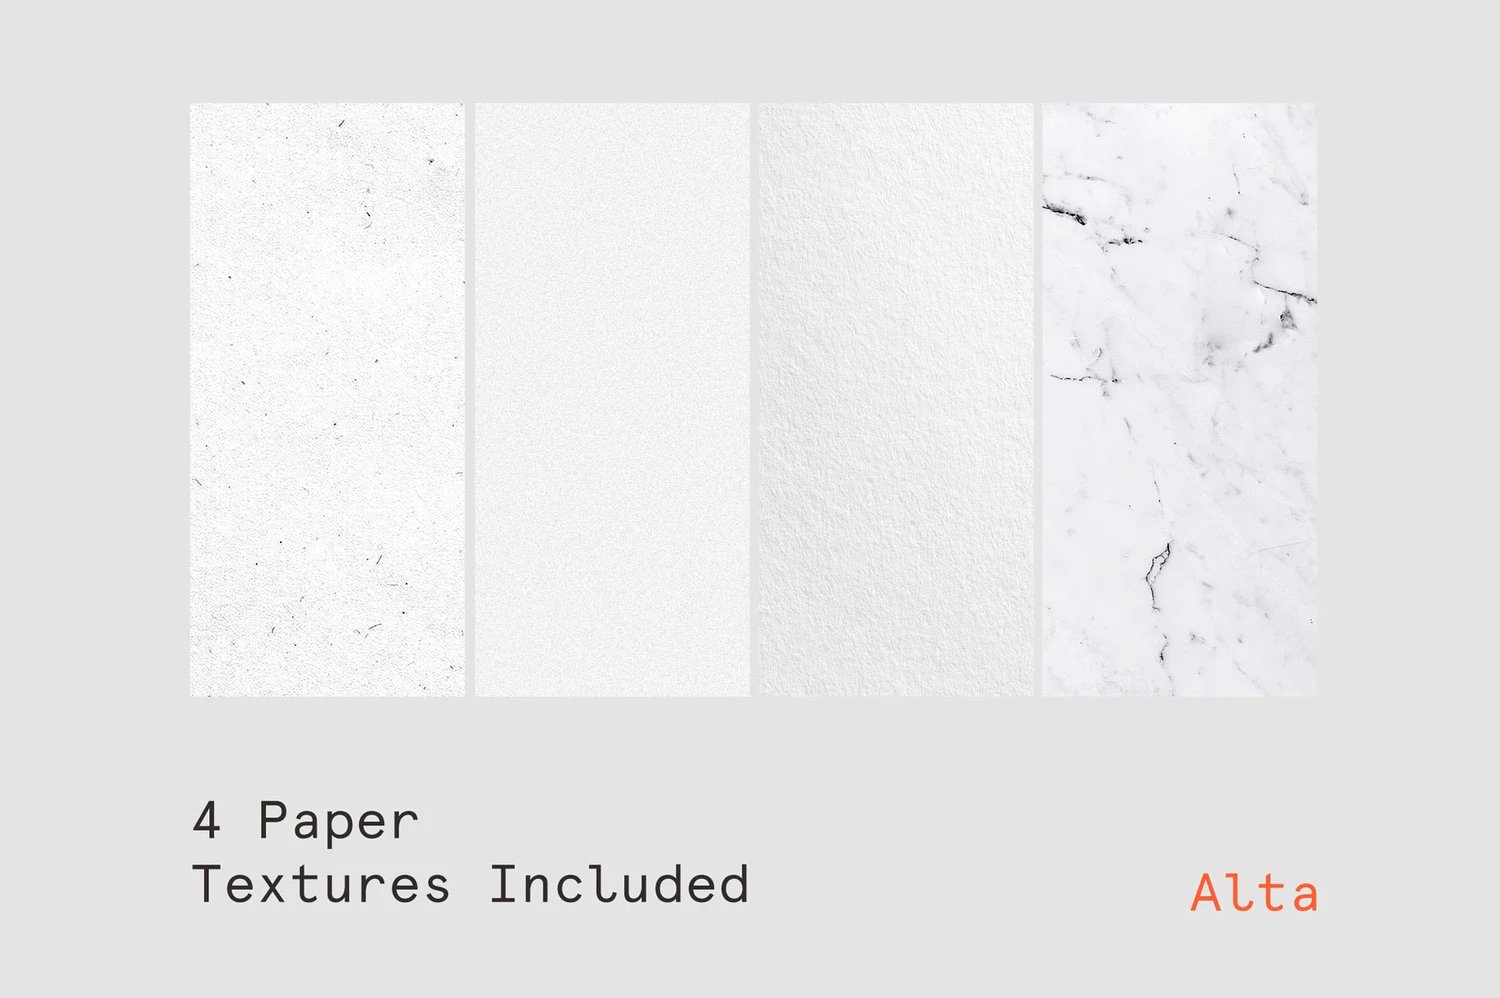 2661 30款复古做旧褶皱折痕海报单页设计作品贴图ps样机素材国外设计模板 Wrinkle – Fold Paper Mockup